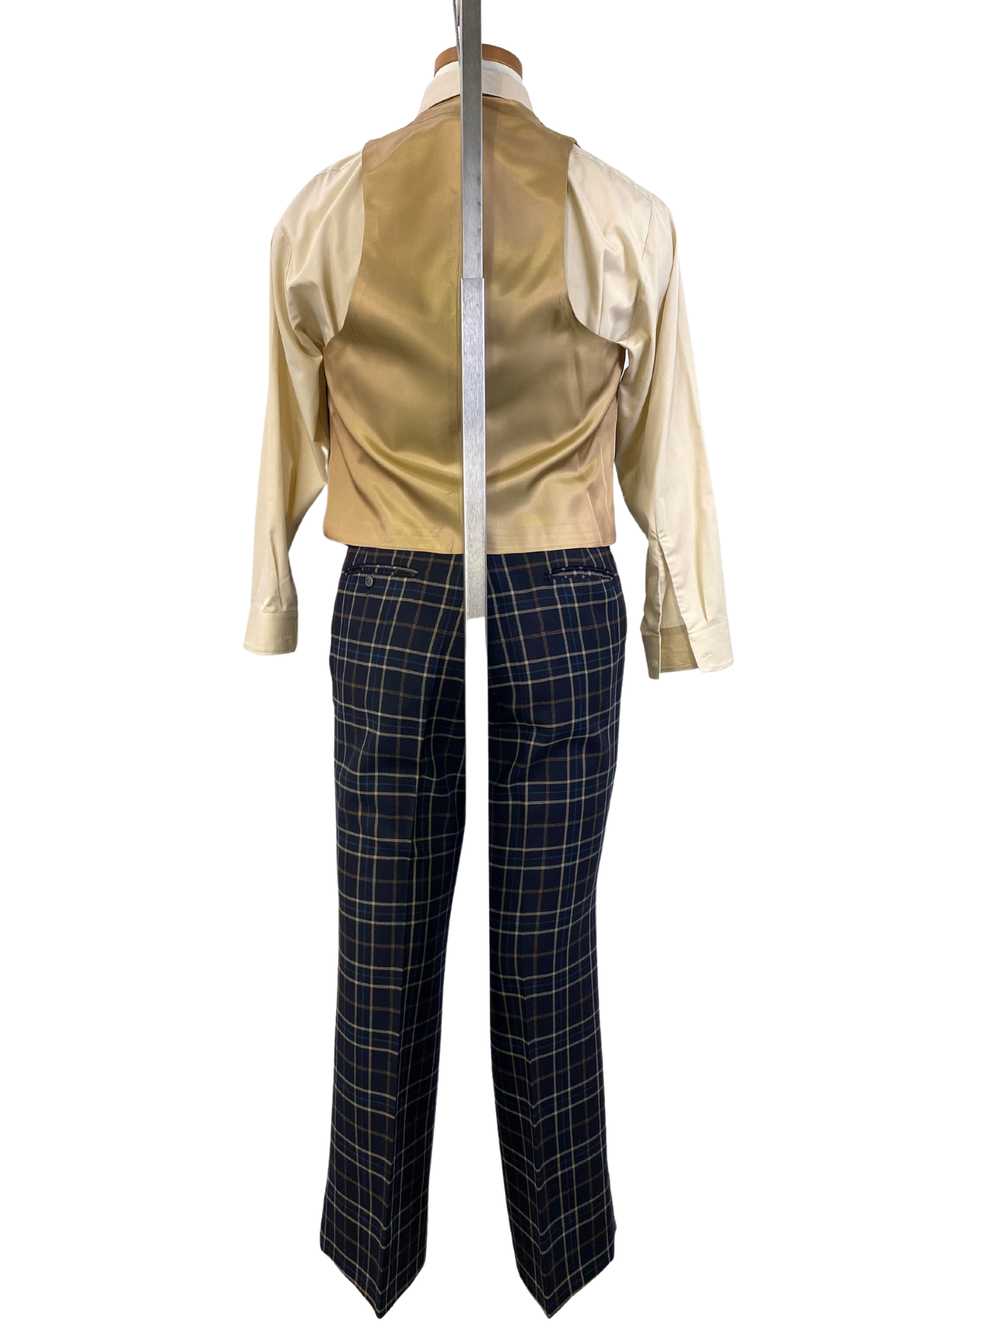 1970s Vintage Men's Suit, Navy/ Beige Plaid 3-Pie… - image 4